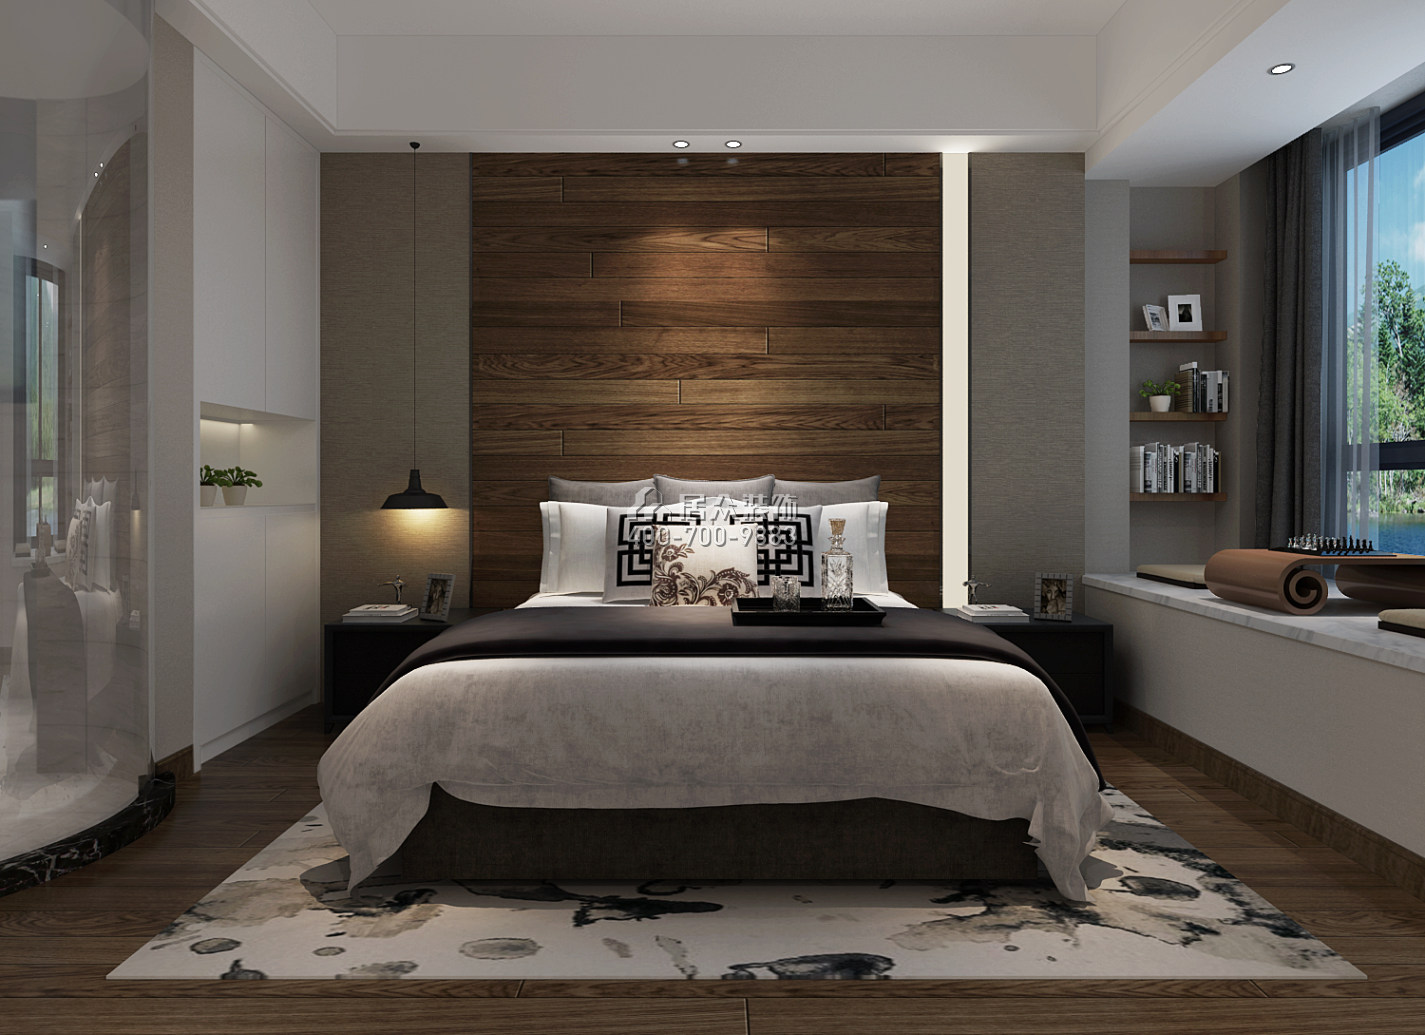 天利天鹅湾132平方米现代简约风格平层户型卧室kok电竞平台效果图